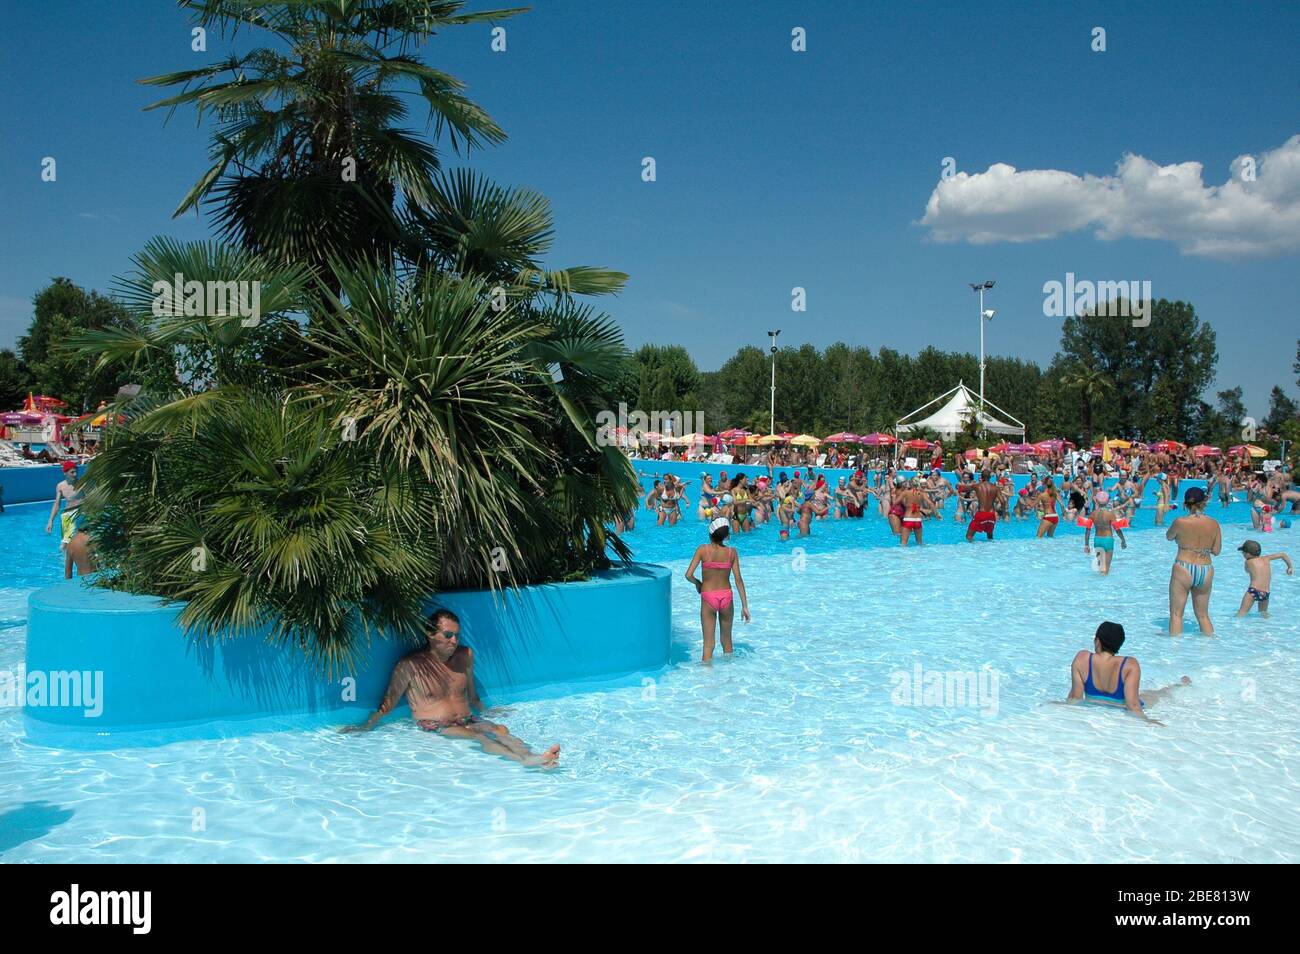 CAVALLERMAGGIORE, ITALIA - Agosto 2006: Animazione nella grande piscina del parco divertimenti le Cupole Foto Stock